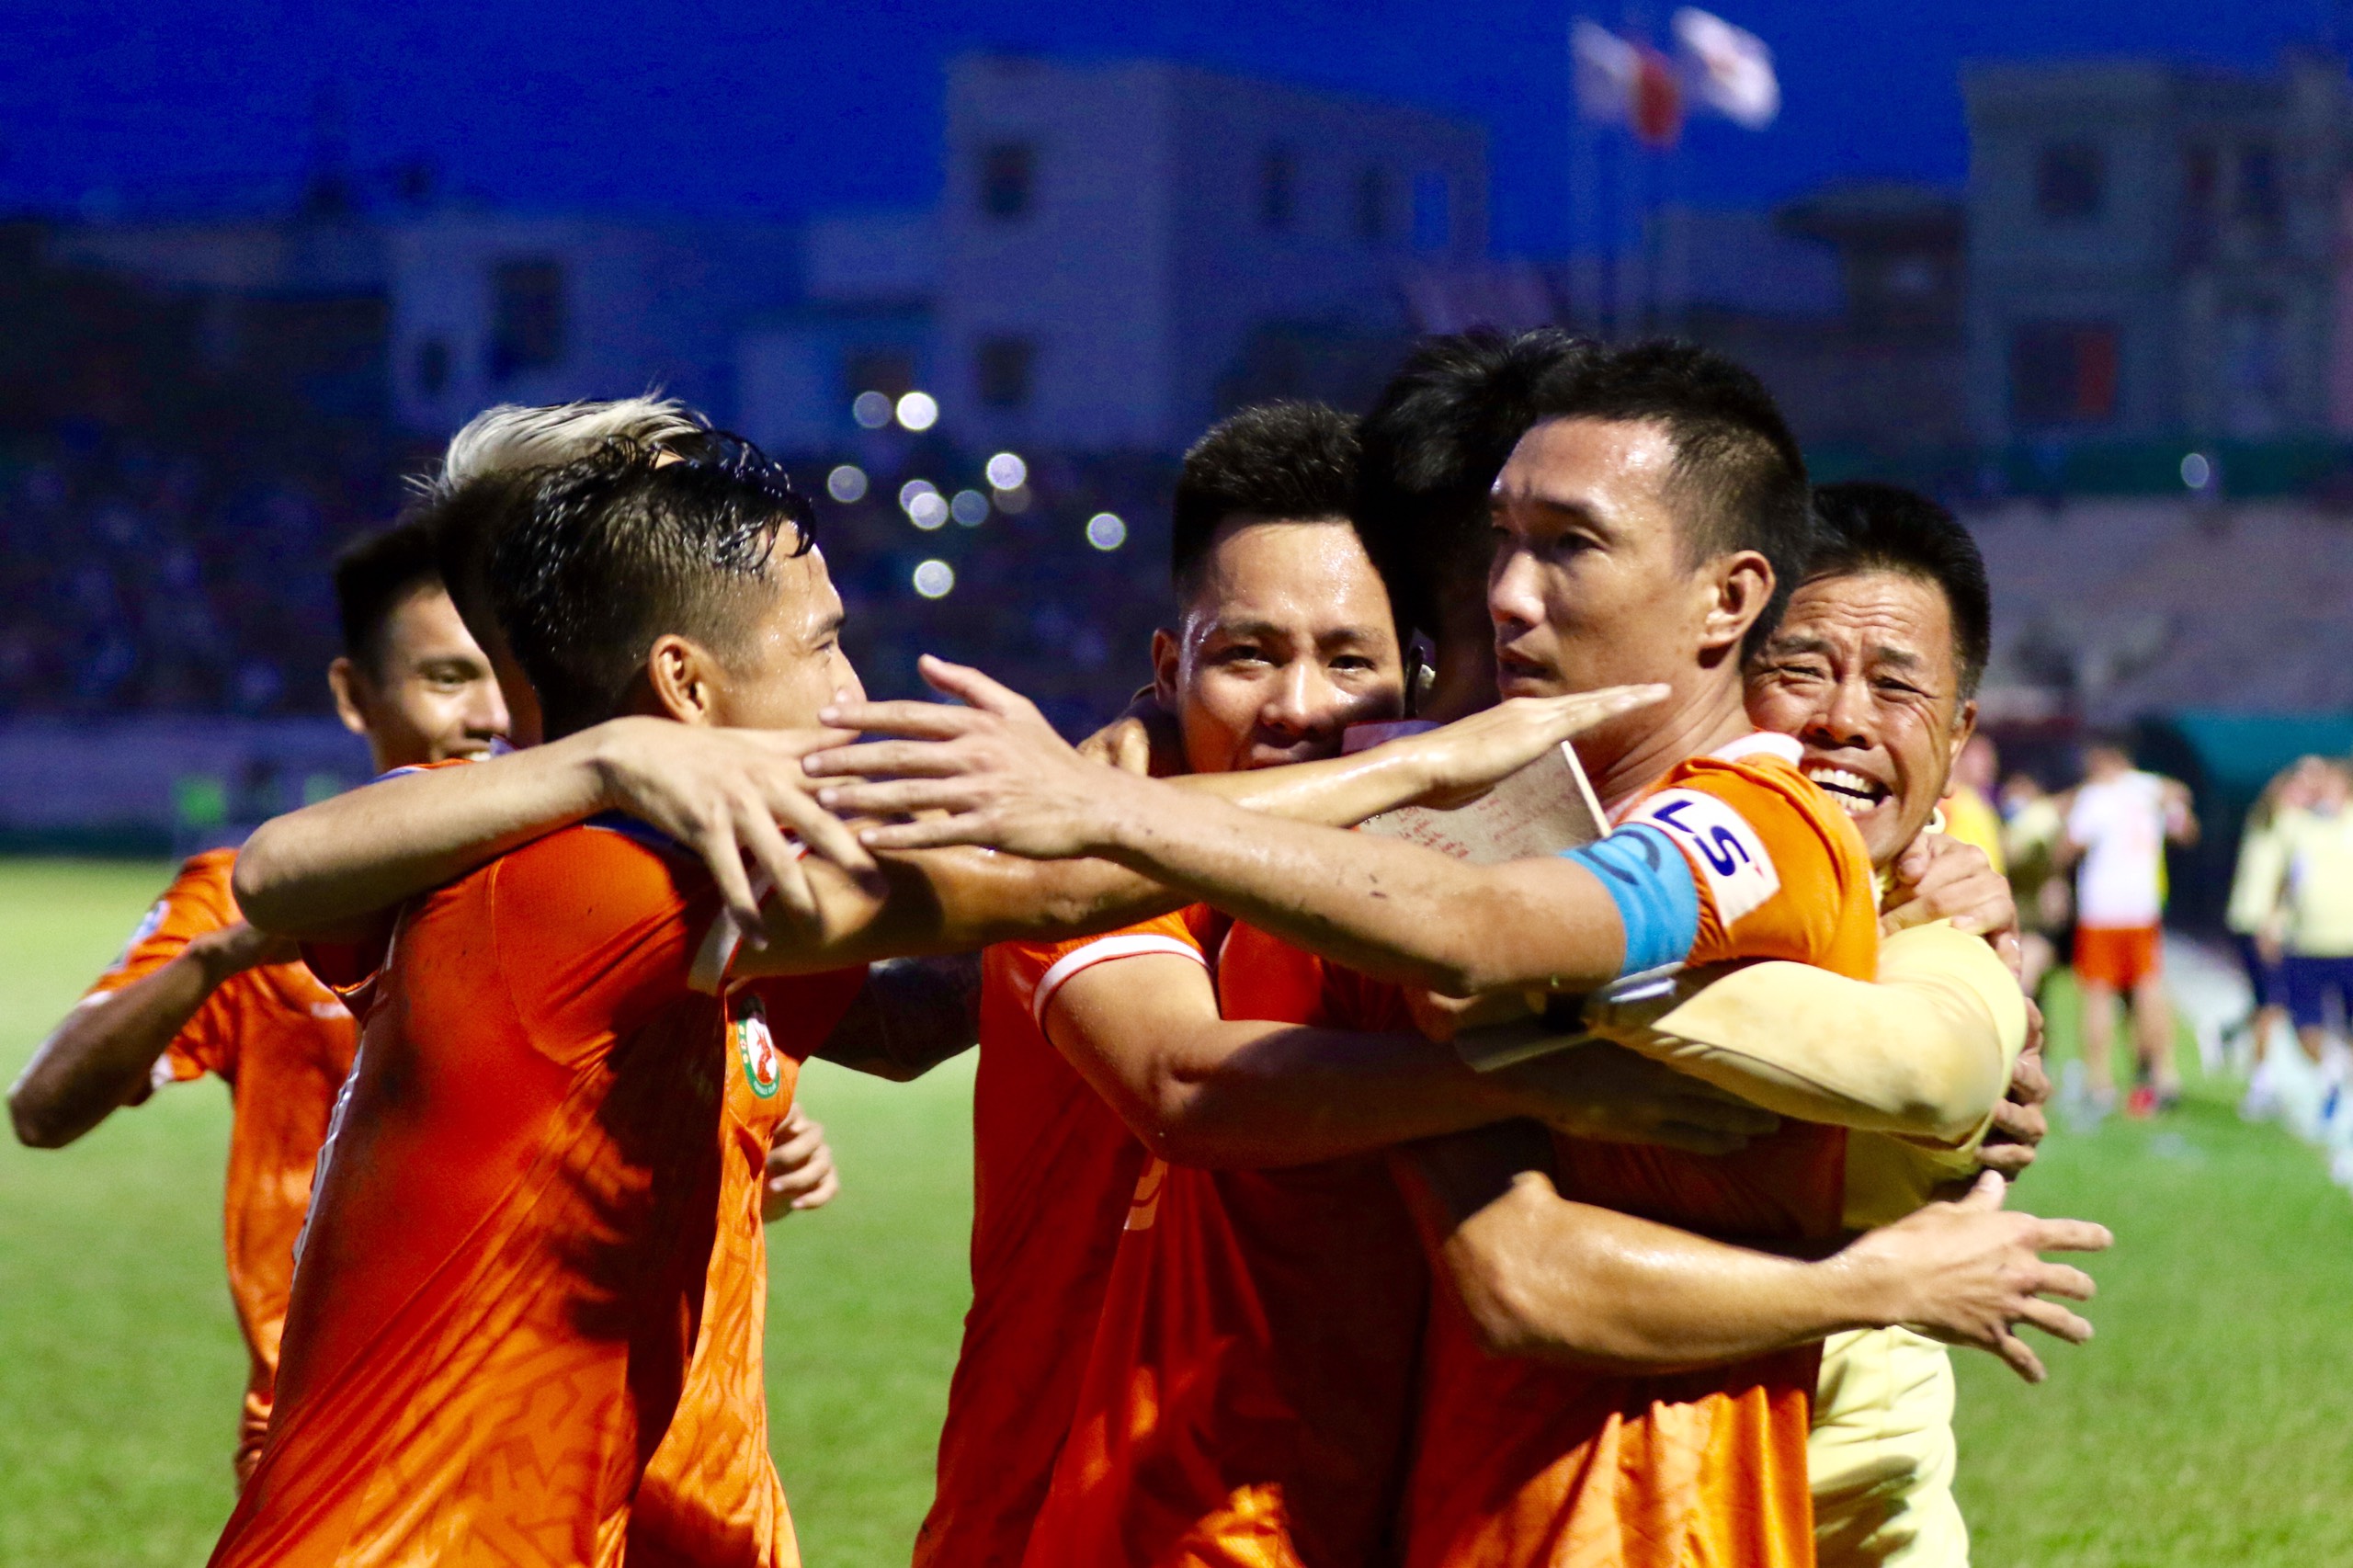 Bóng đá Bình Định: Cùng đến với Bình Định - nơi quê hương của bóng đá! Hình ảnh về bóng đá Bình Định sẽ khiến bạn cảm thấy hào hứng và tự hào hơn về niềm đam mê này.